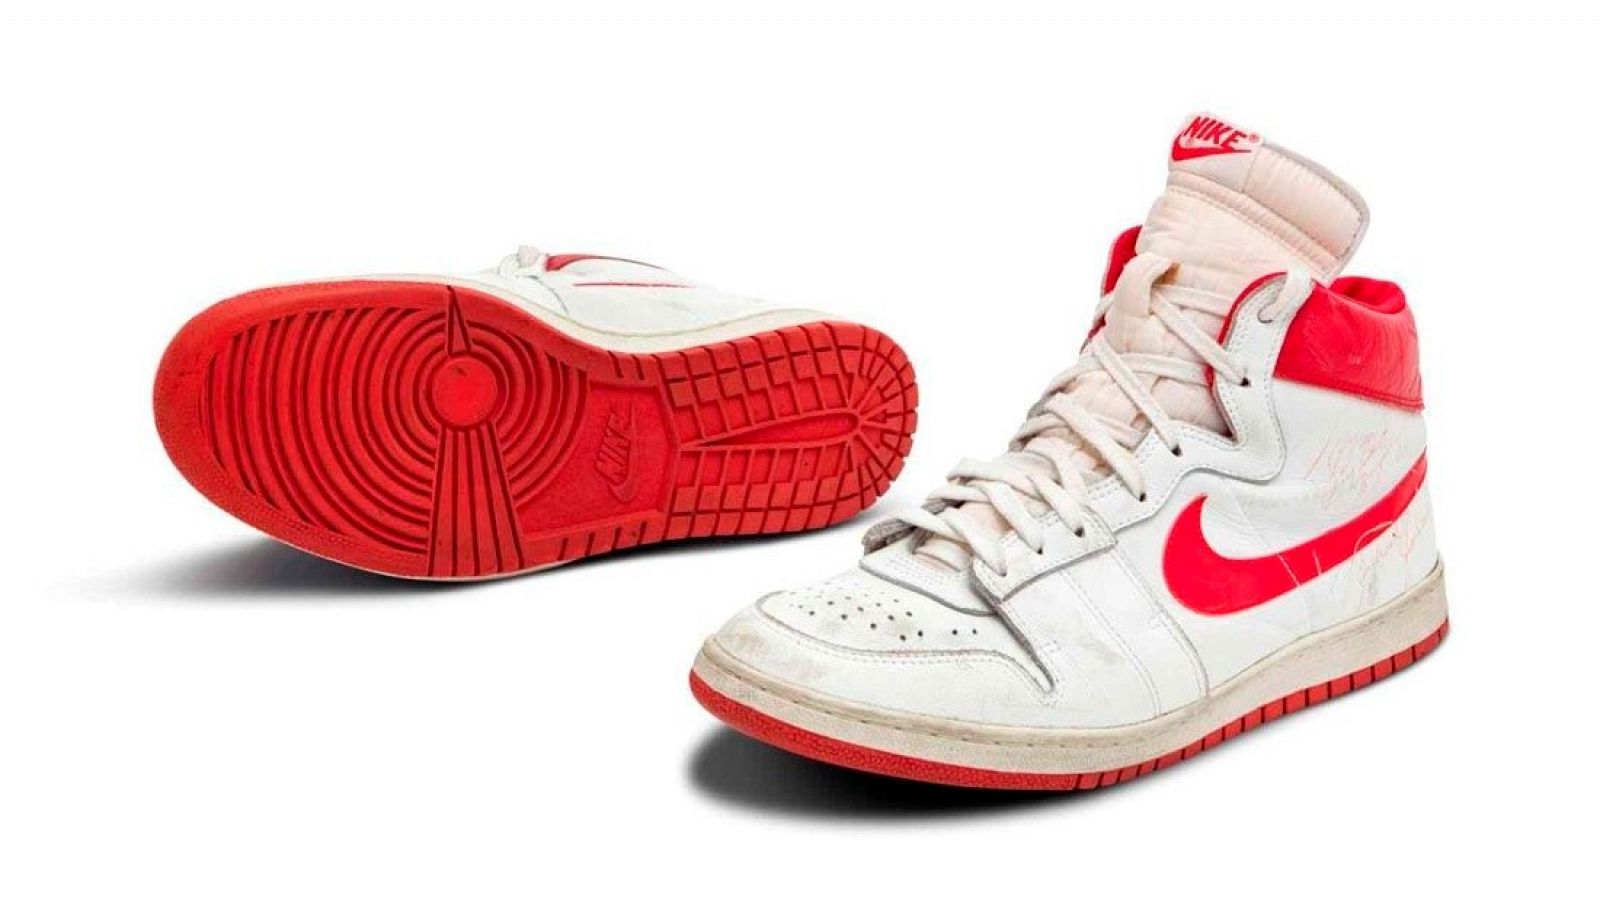 Las zapatillas de Jordan, las más caras de la historia